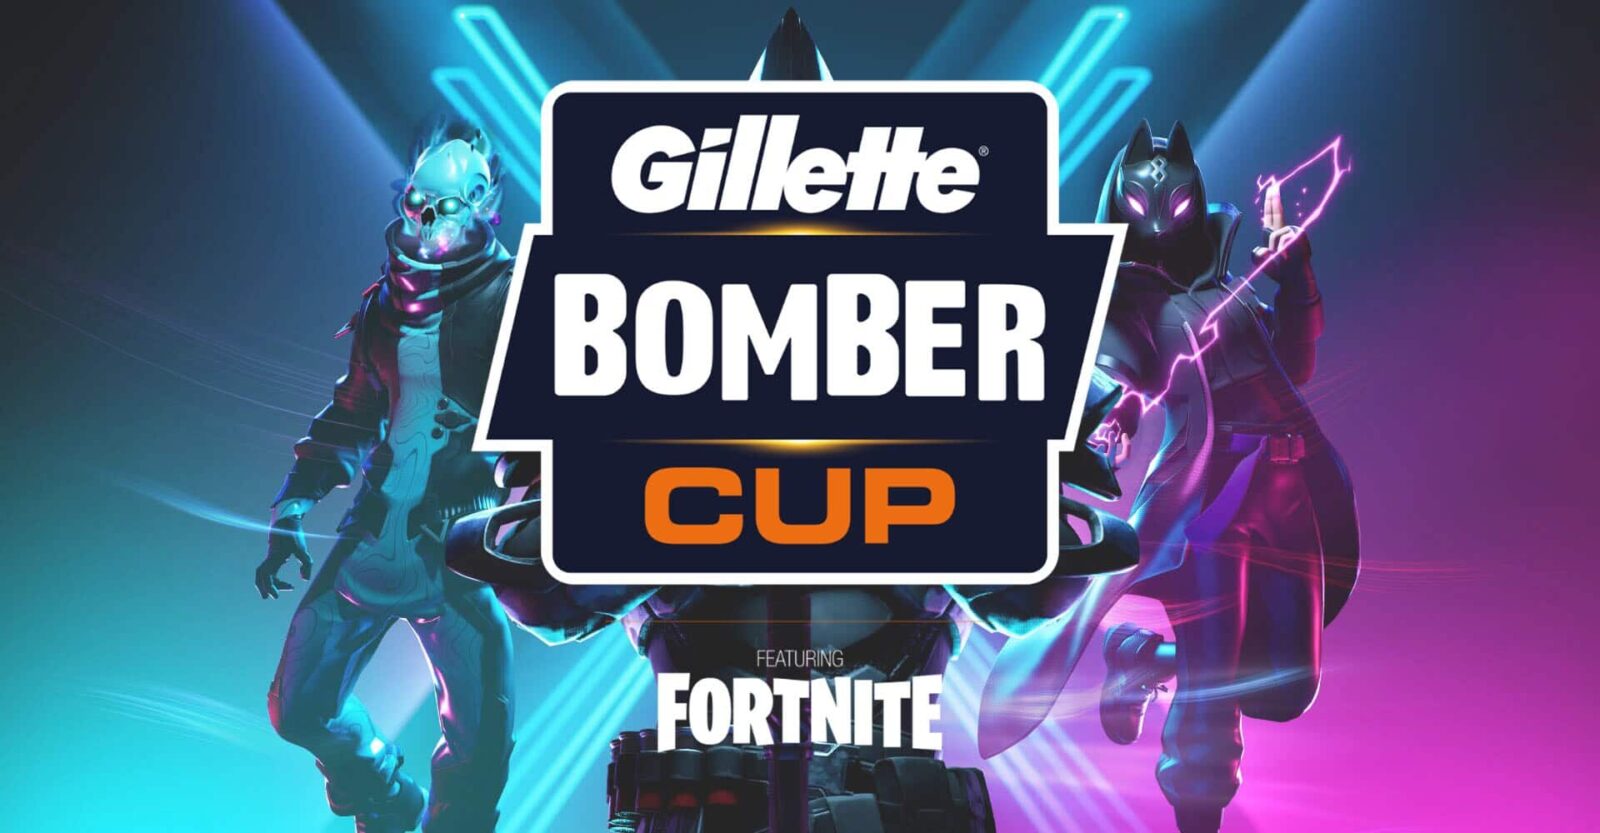 Bomber vs King: Gillette, presenta un'inedita mappa di gioco thumbnail